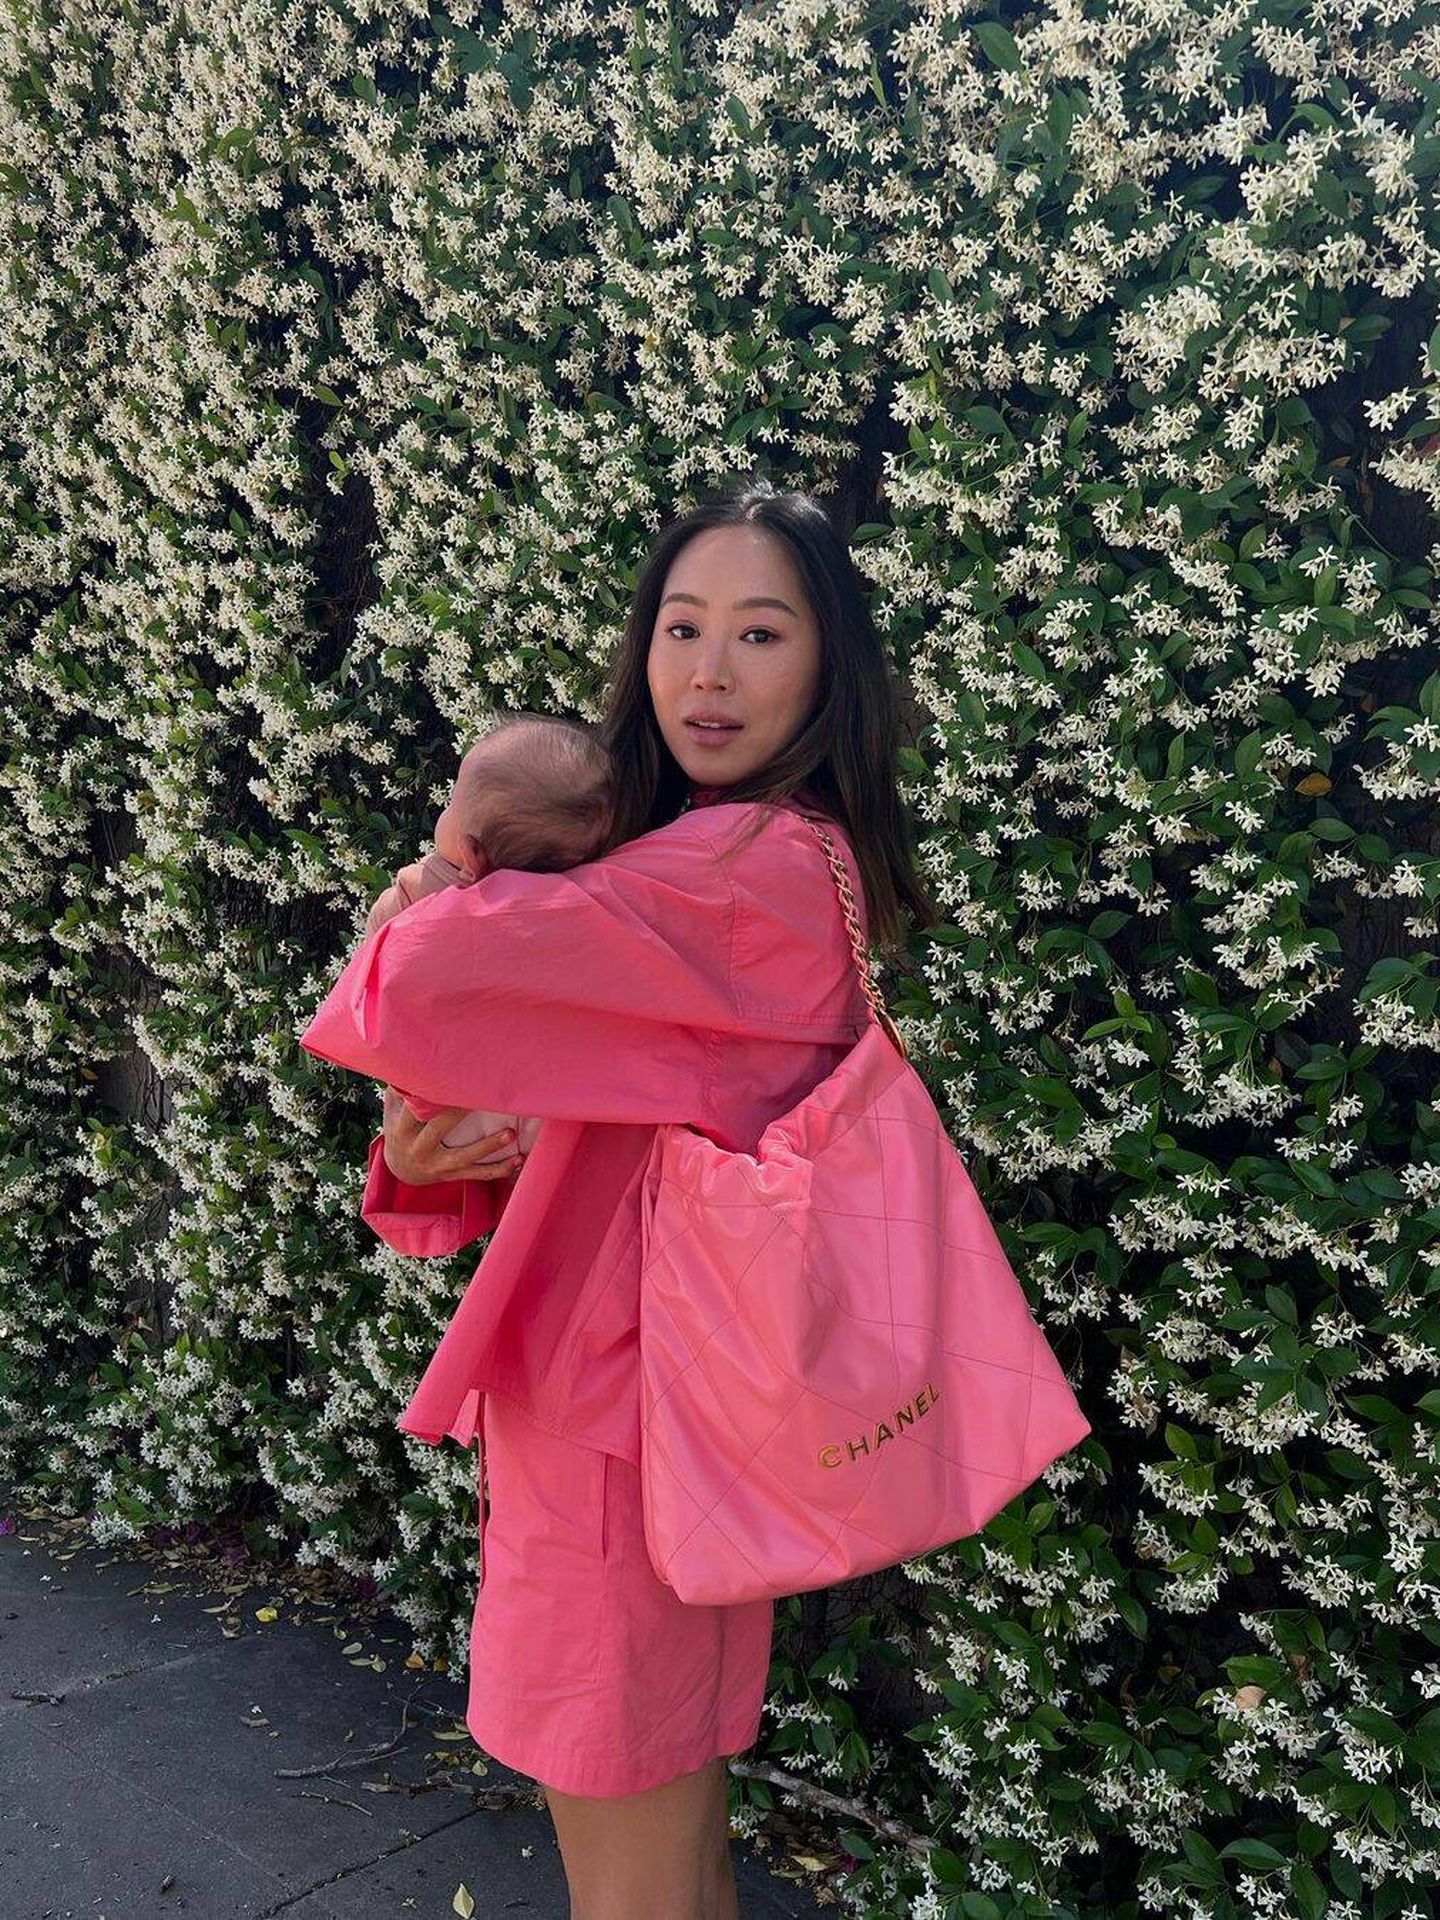 La blogger Aimee Song, con el bolso de Chanel. (Instagram/@aimeesong)